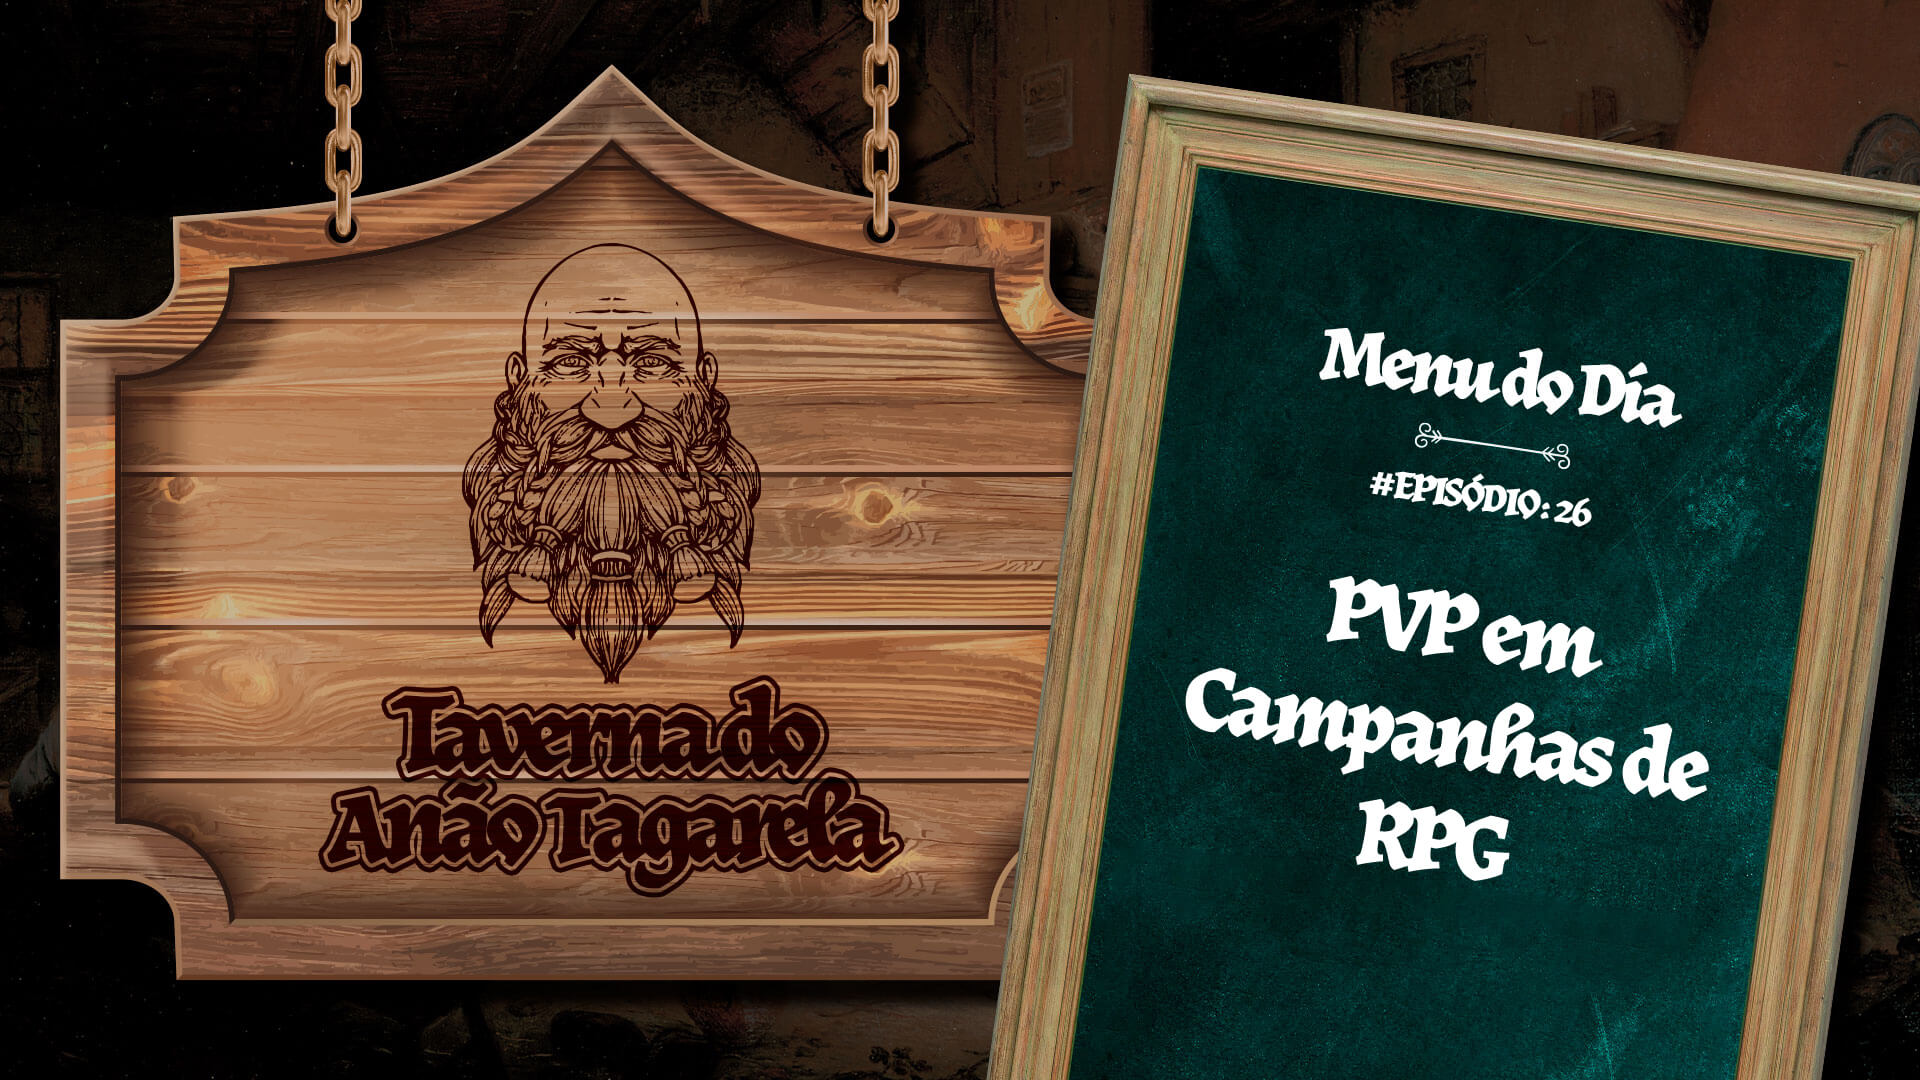 PVP em Campanhas de RPG – Taverna do Anão Tagarela #26